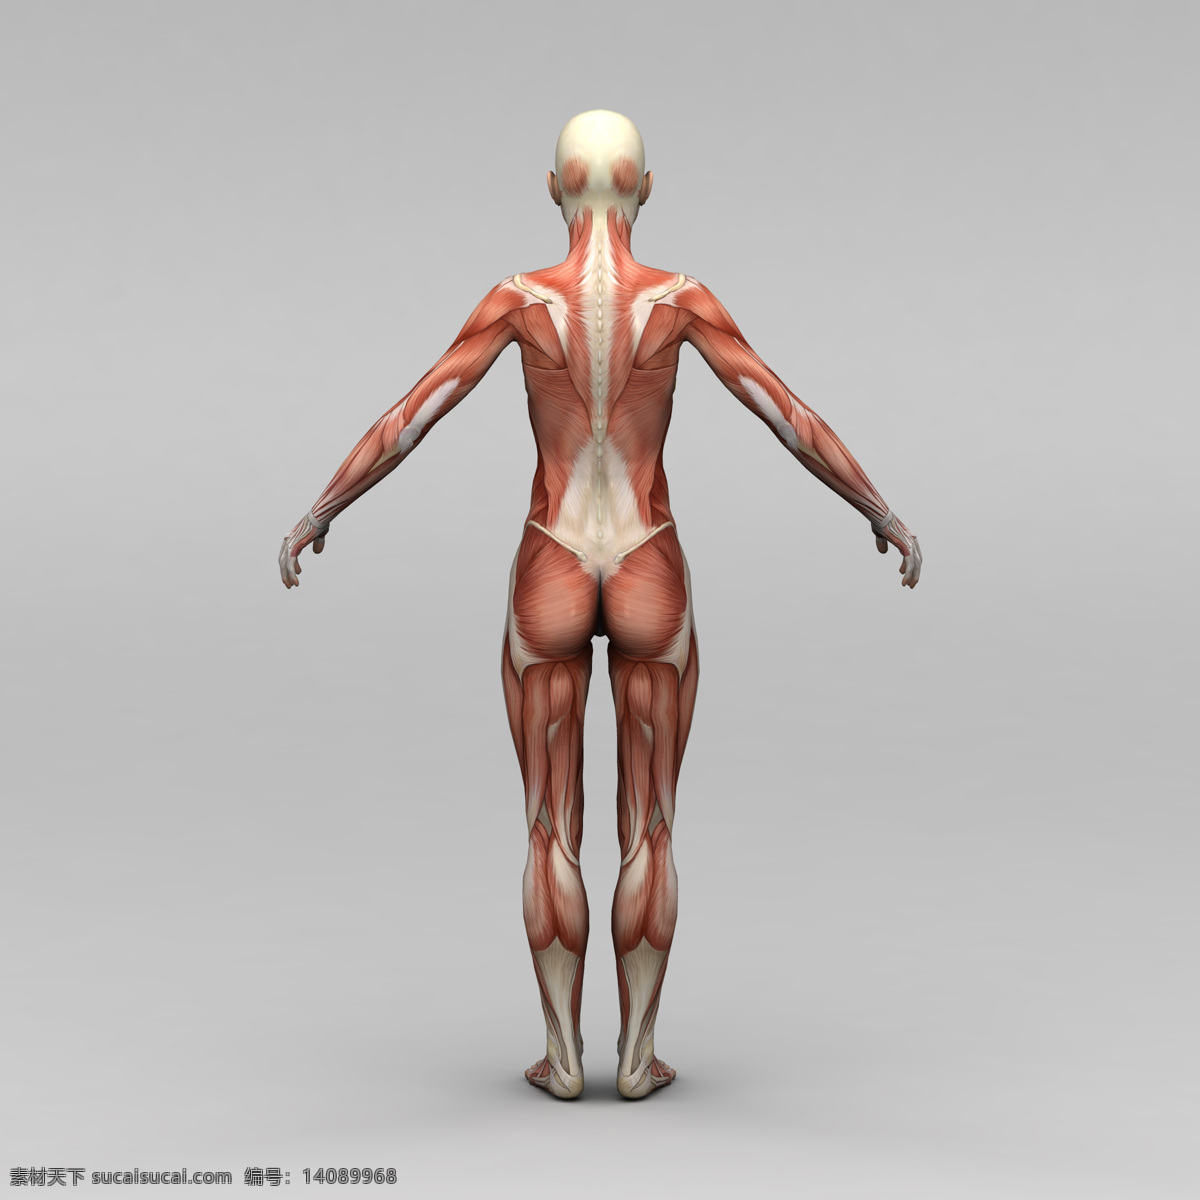 女性 背部 肌肉 组织 人体 素描画 人体肌肉组织 人体肌肉器官 肌肉结构 人体解剖学 人体器官 人体器官图 人物图片